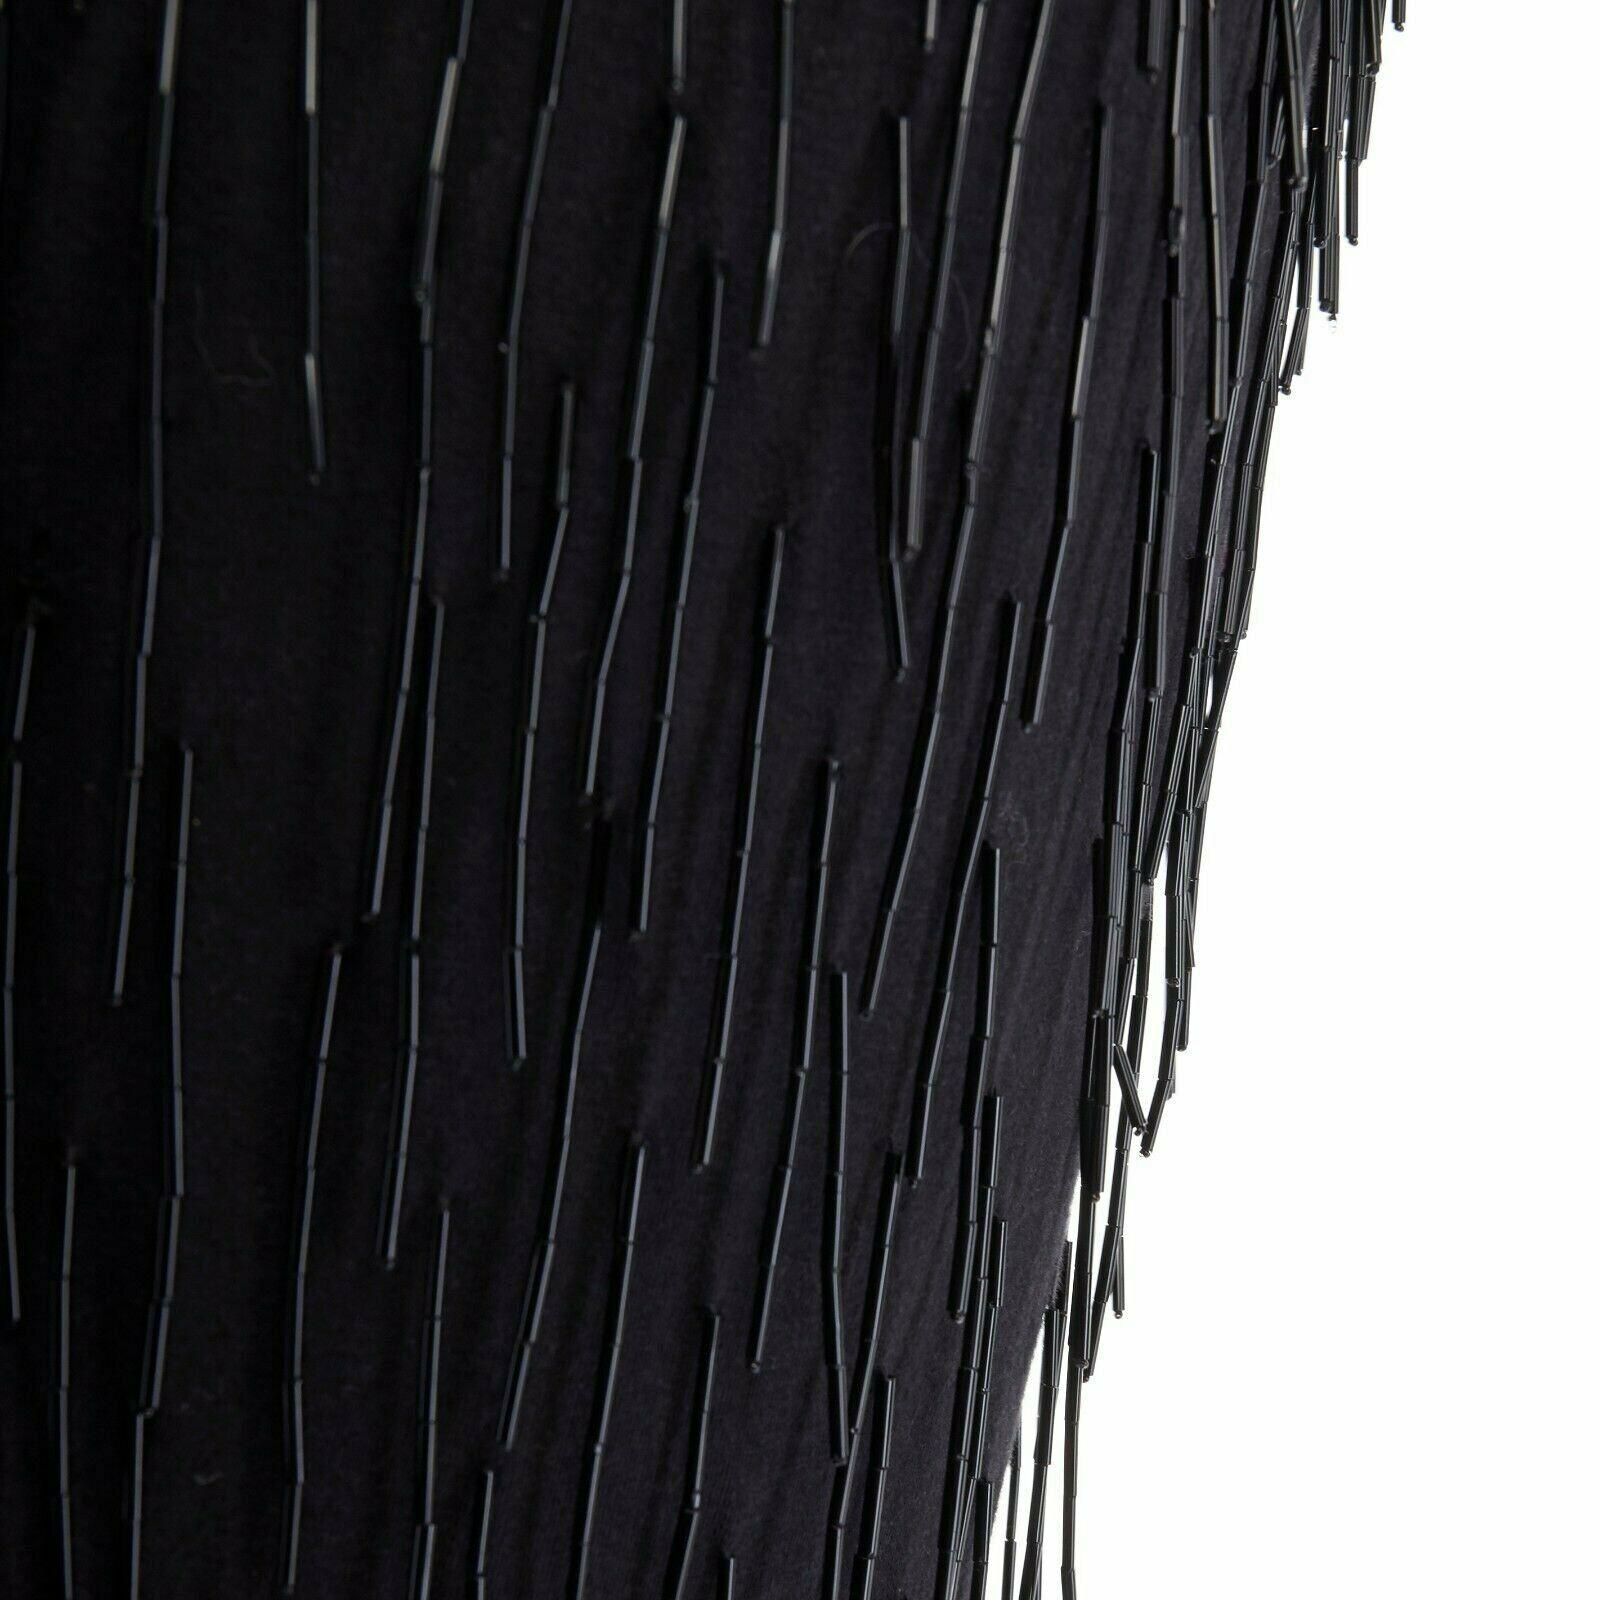 LANVIN ALBER ELBAZ black beaded fringe embellished flapper silk dress FR34 XS For Sale 4